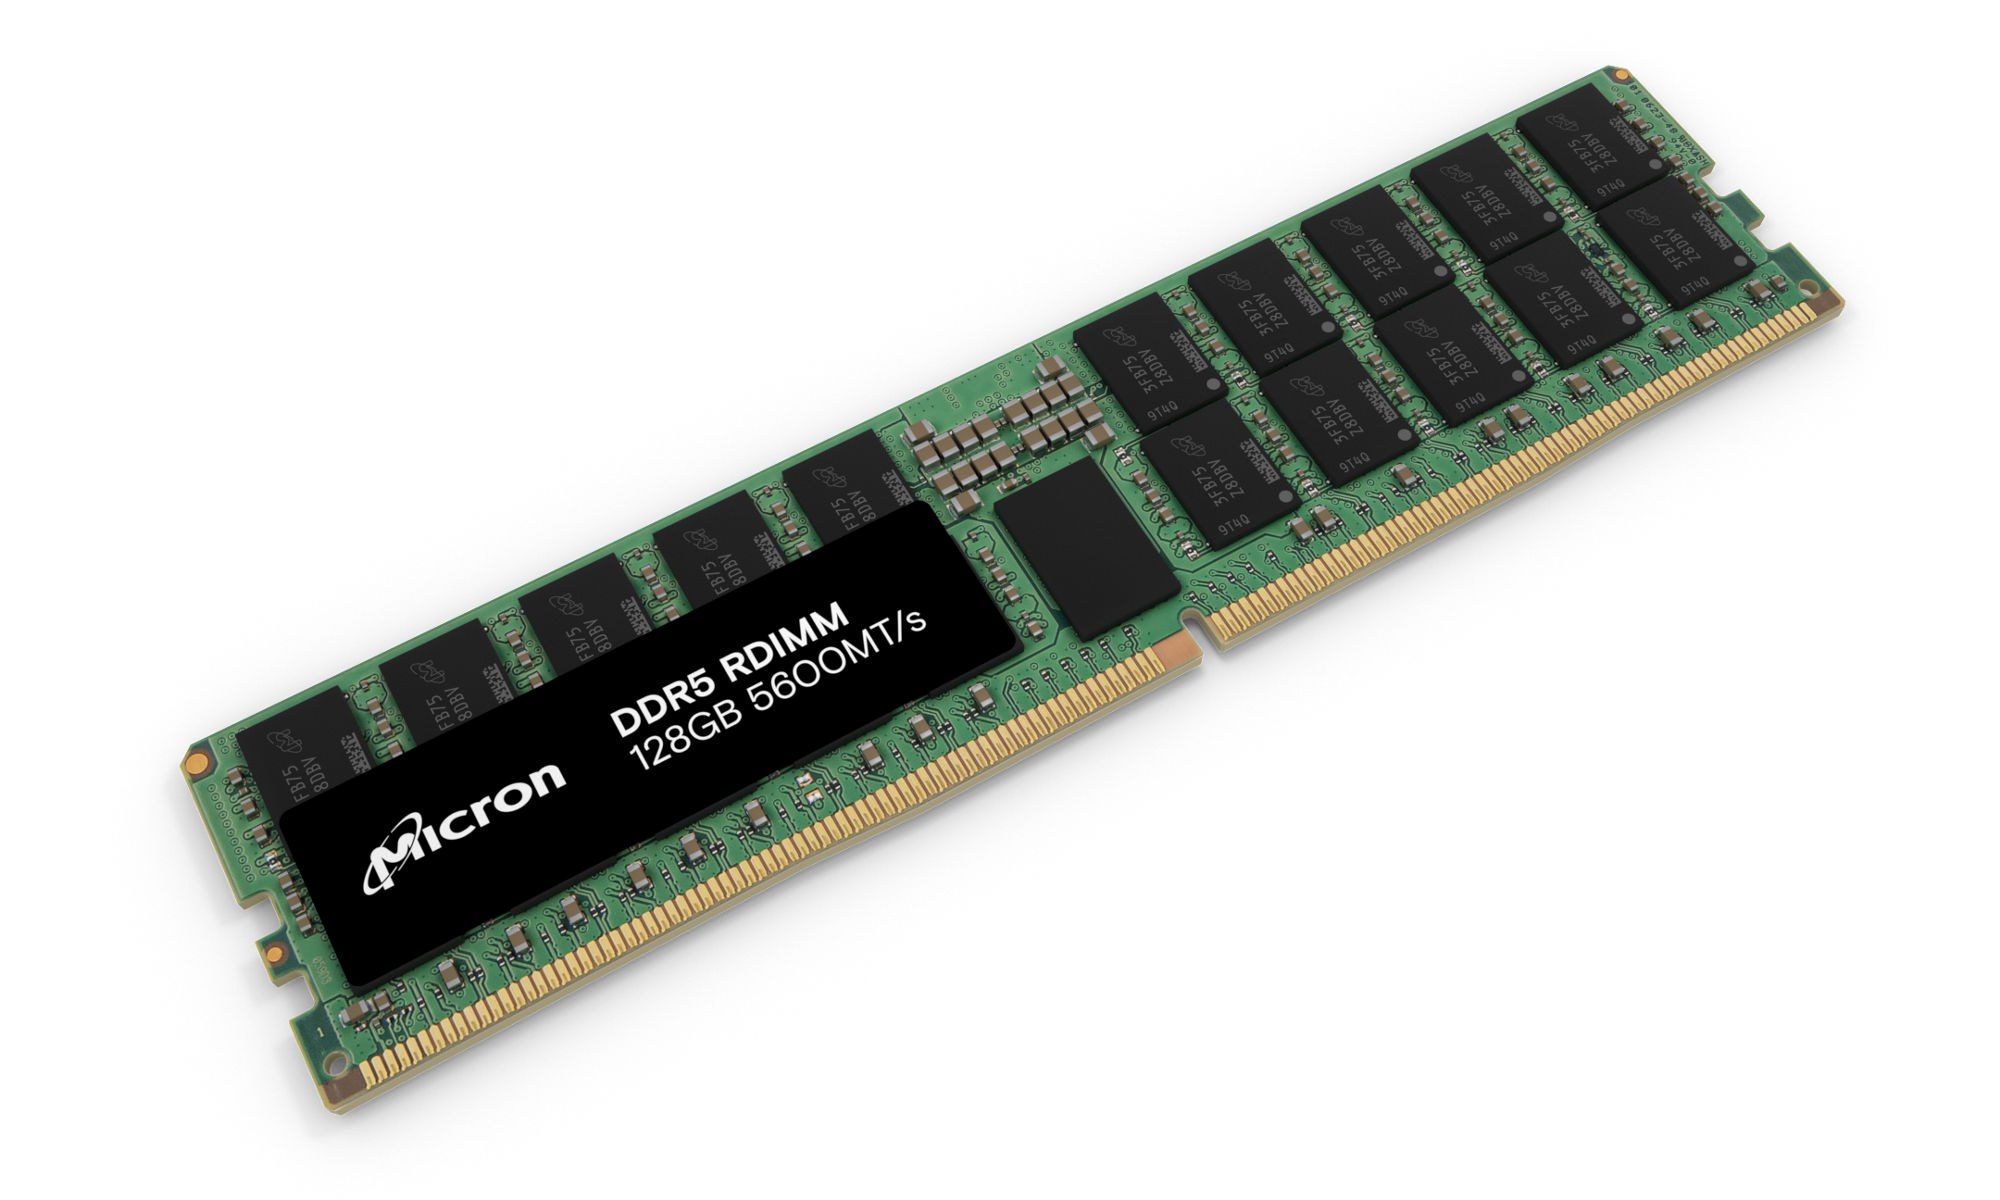 并排放置的美光 DDR5 RDIMM 96GB 和 128GB 模块